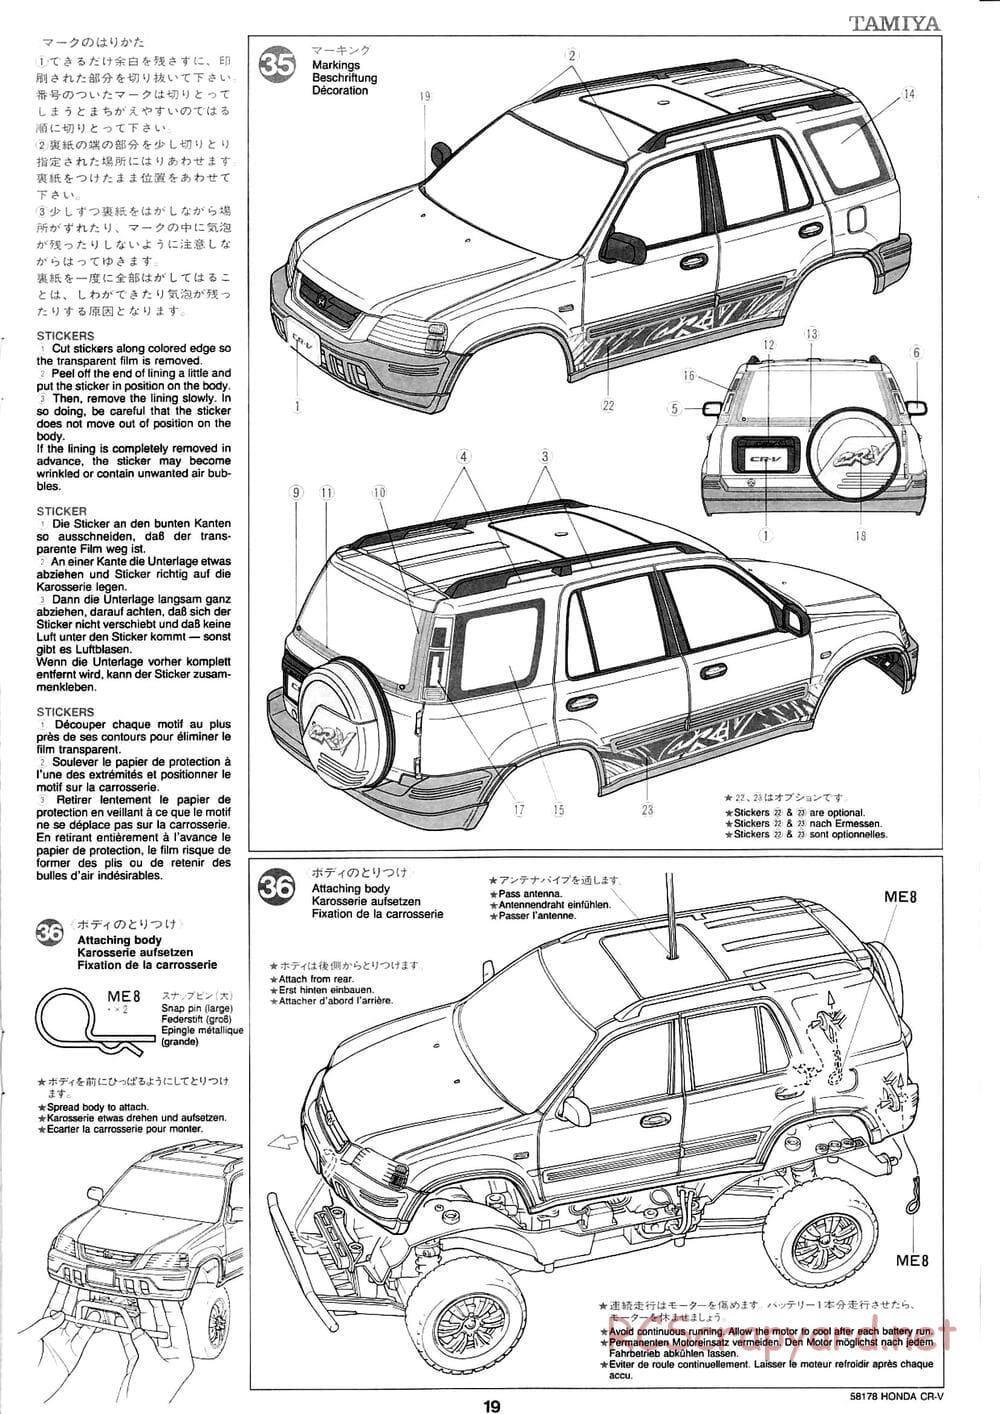 Tamiya - Honda CR-V - CC-01 Chassis - Manual - Page 19